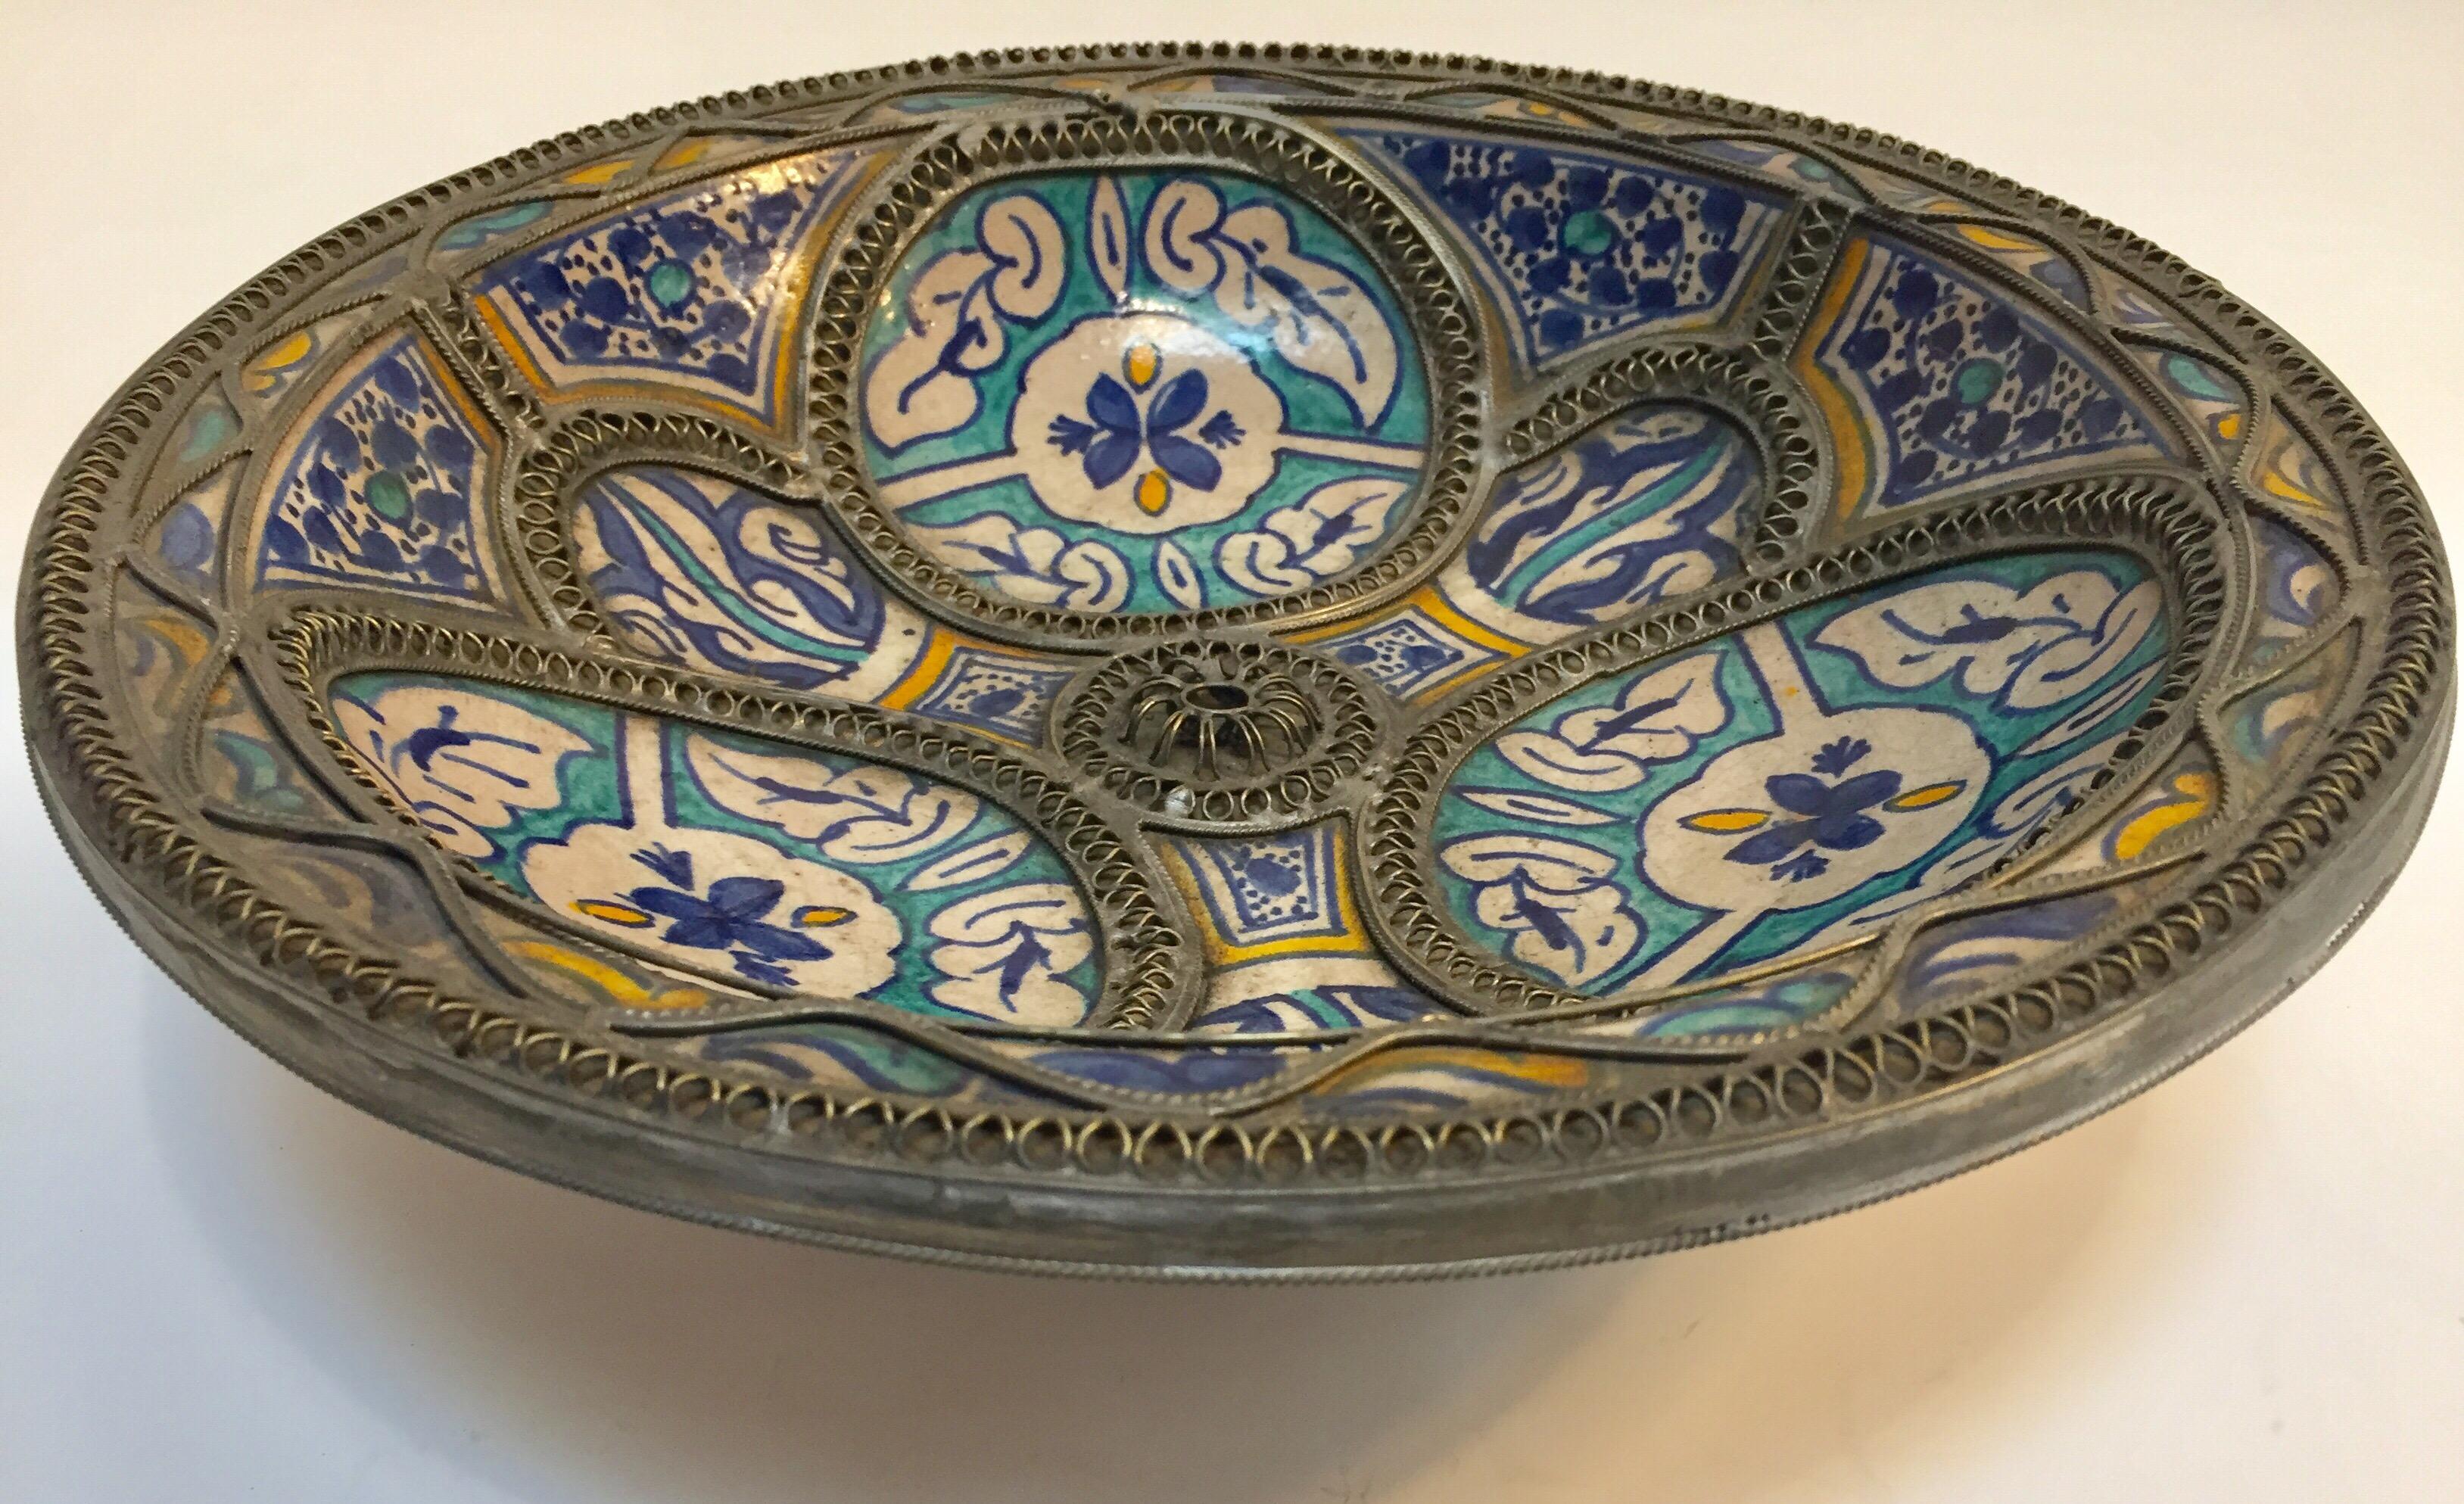 Handgefertigter großer marokkanischer polychromer Keramikteller aus Fez. Bleu de Fez, sehr schöne Designs, handgemalt von einem Künstler in Fez.
Geometrische und florale Motive, verziert mit filigranem Neusilber.